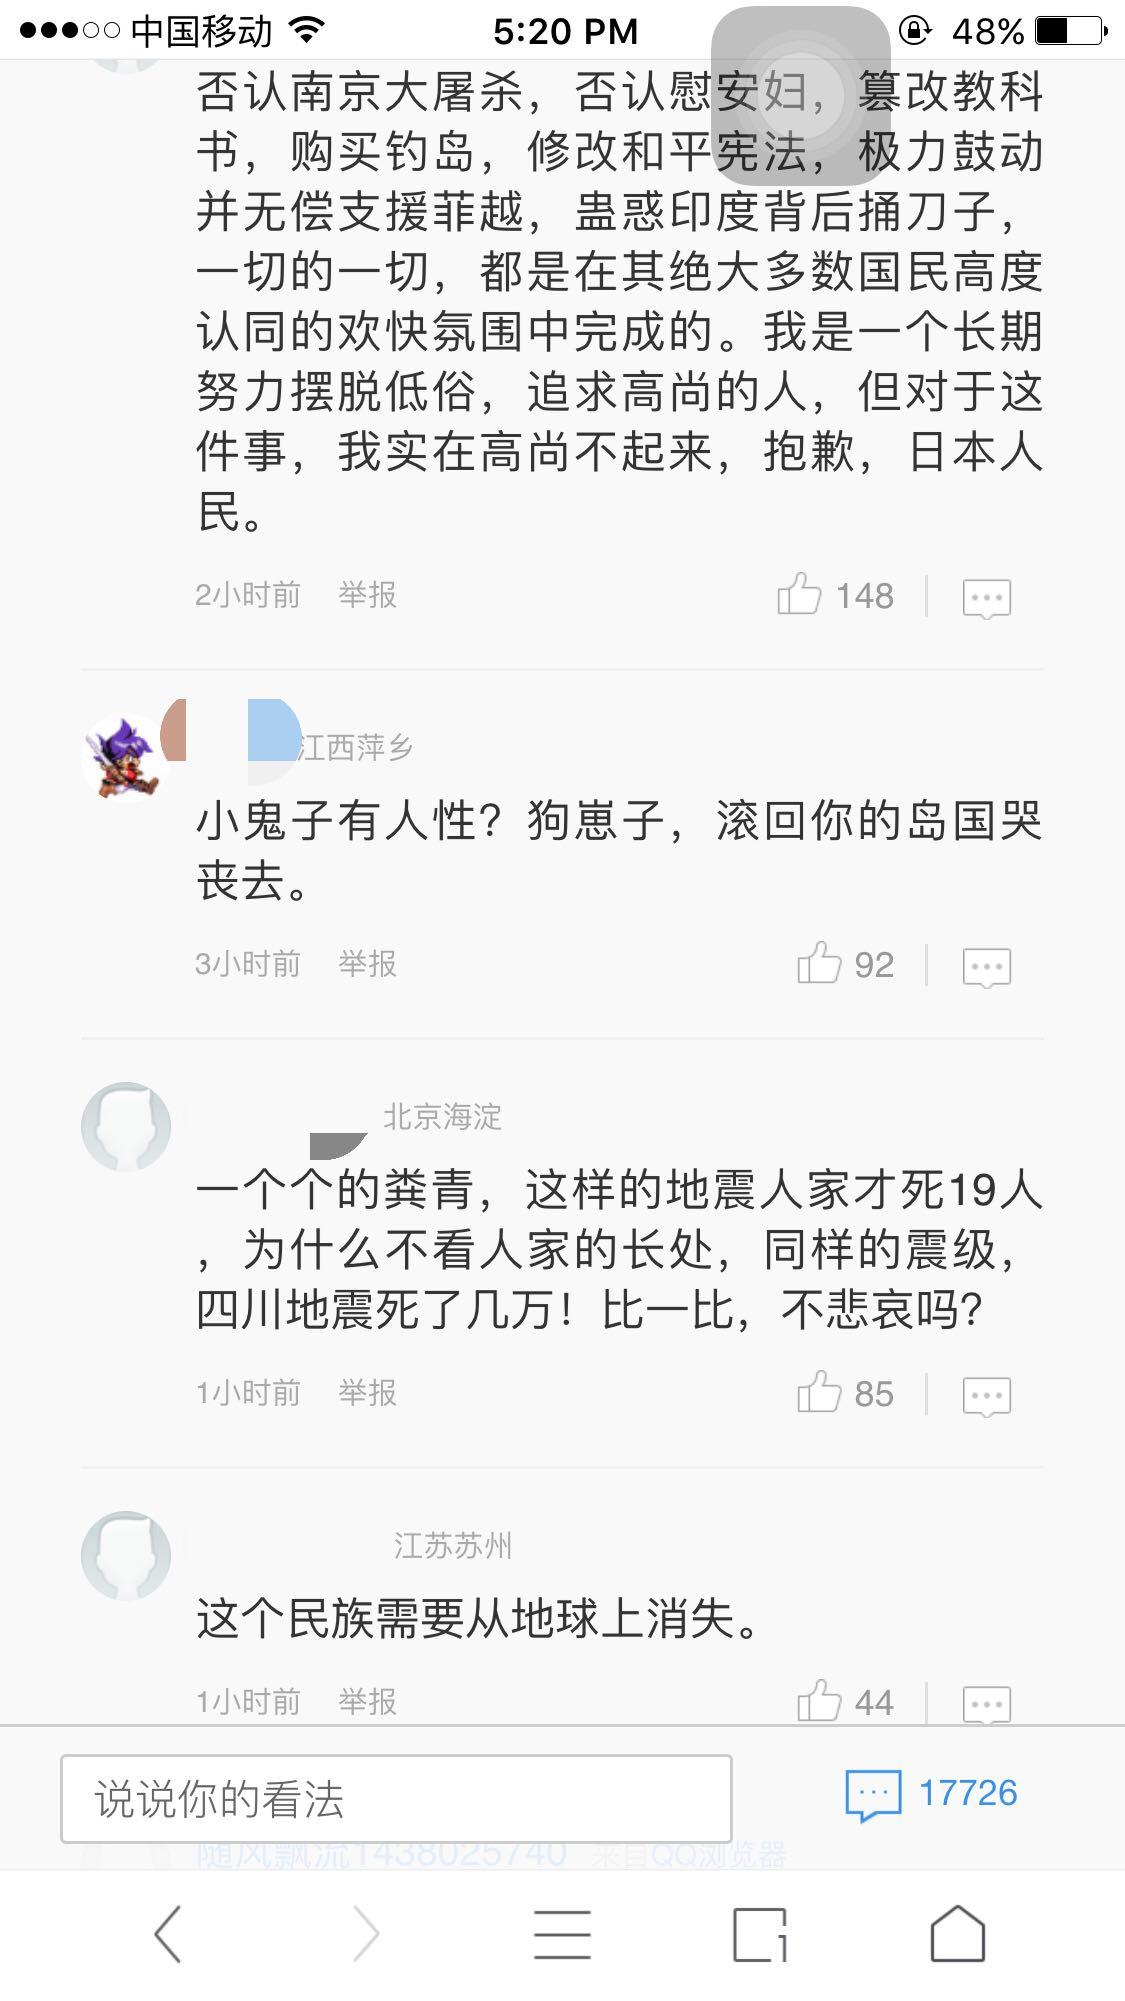 如何看待日本熊本地震后,中国部分网民在新闻